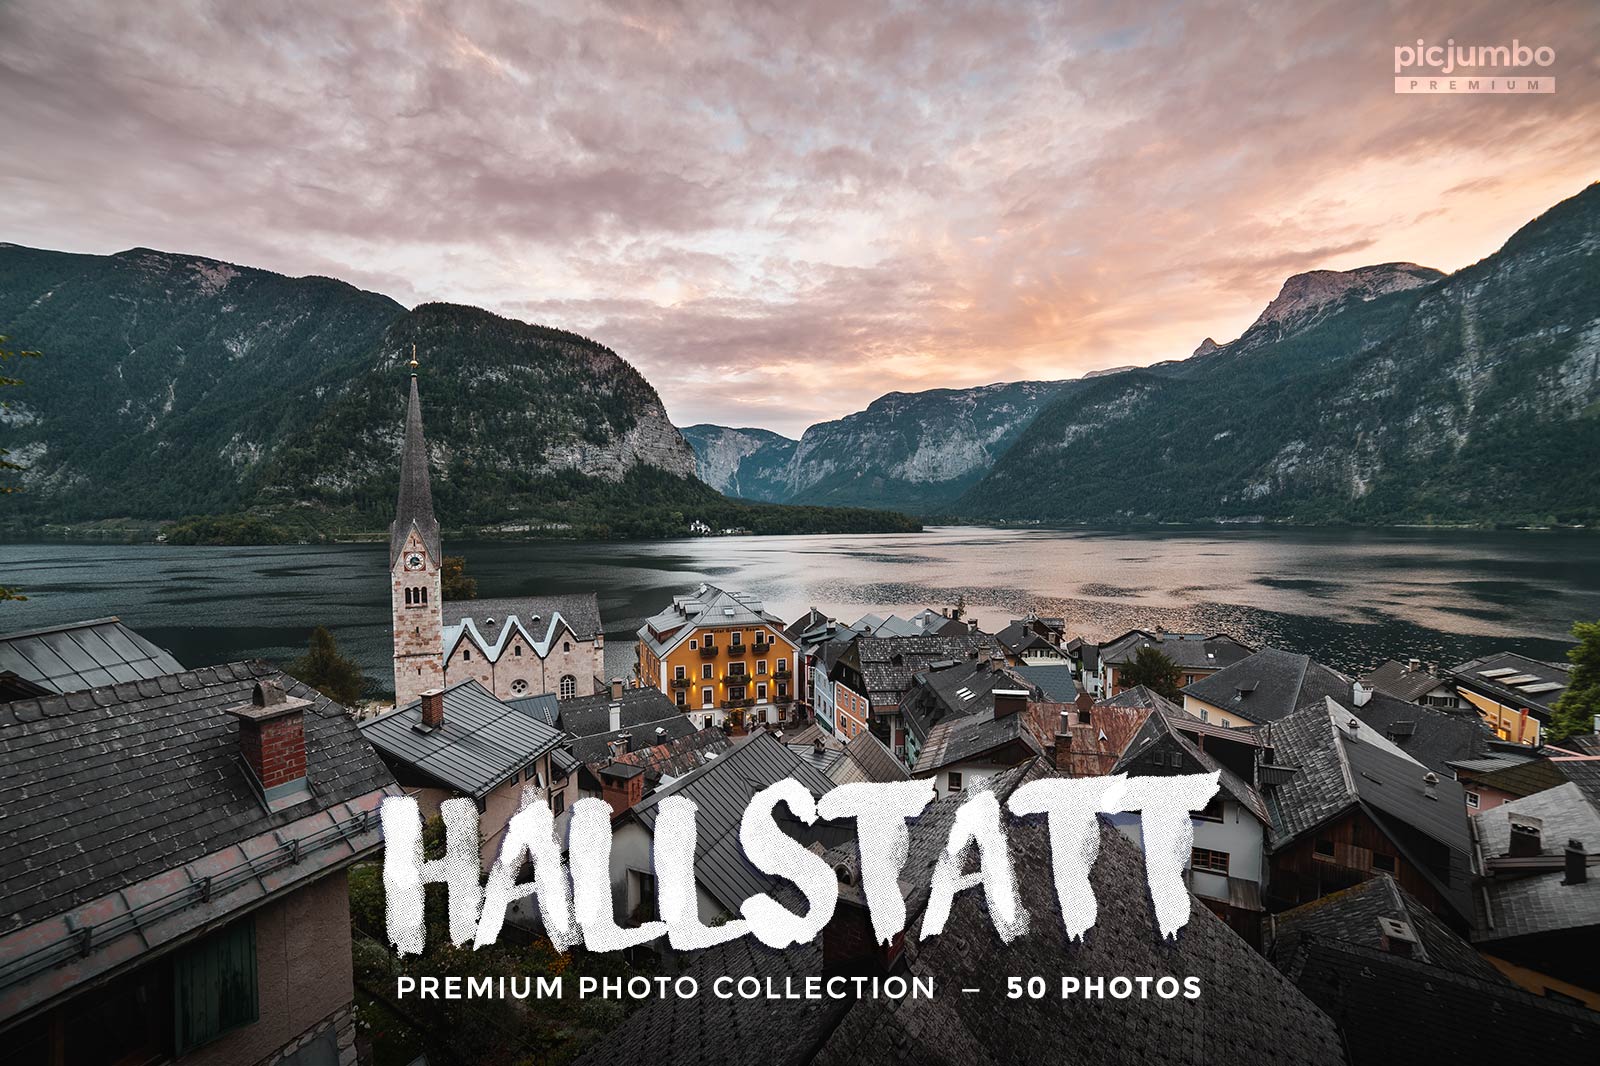 Hallstatt Stock Photo Collection